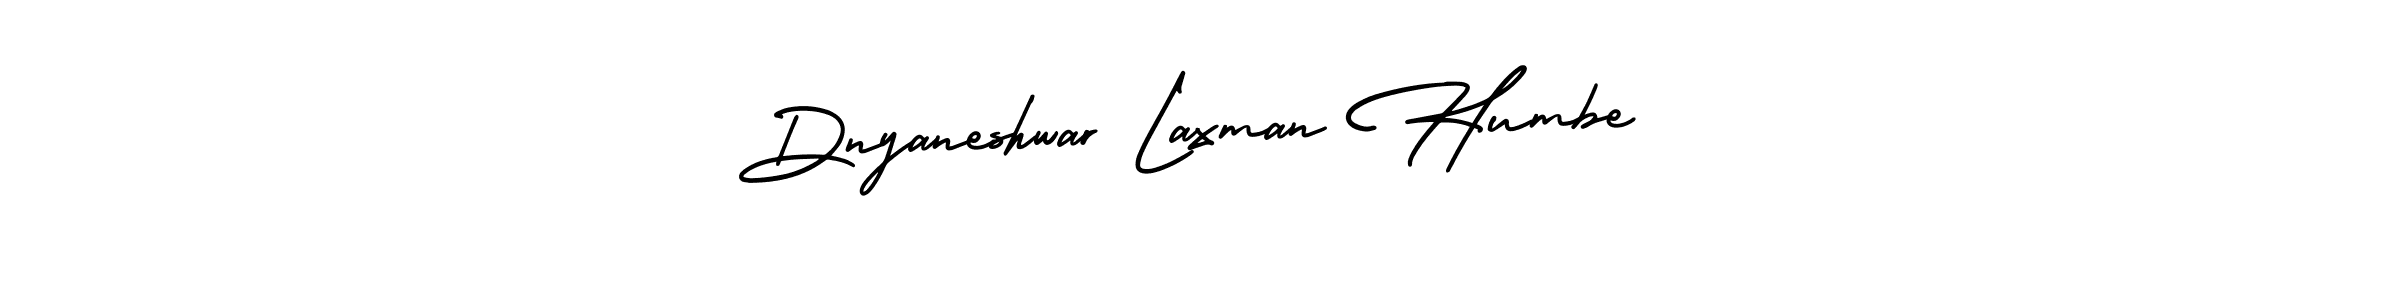 Best and Professional Signature Style for Dnyaneshwar Laxman Humbe. AmerikaSignatureDemo-Regular Best Signature Style Collection. Dnyaneshwar Laxman Humbe signature style 3 images and pictures png